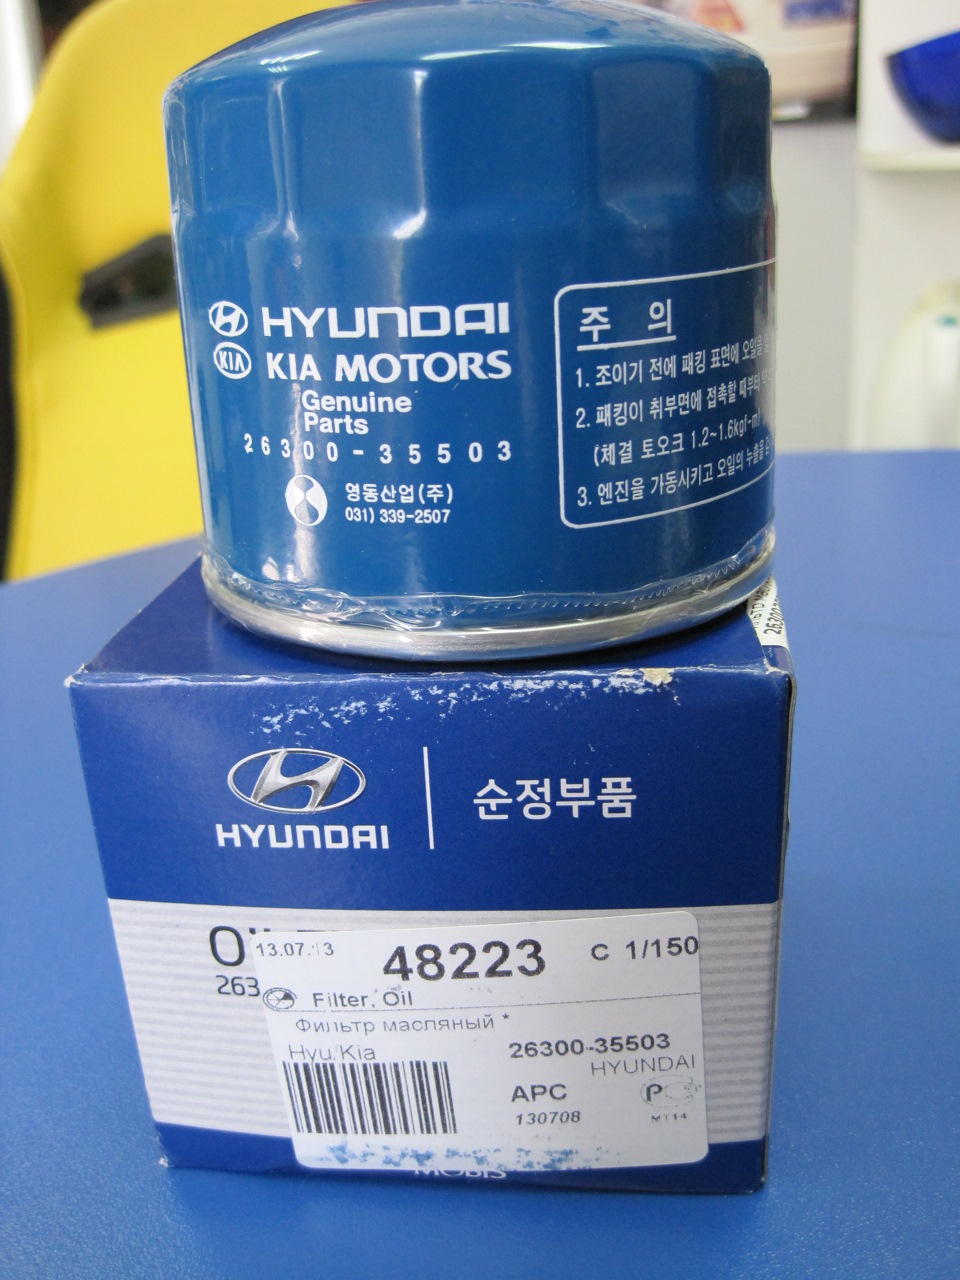 Масляный фильтр рио х лайн. Hyundai Kia 2630035503 фильтр масляный. Фильтр масляный Киа Рио 1.6 2013. Фильтр масляный Киа Рио 1.6 2015. Масляный фильтр Киа Рио 4 1.6.